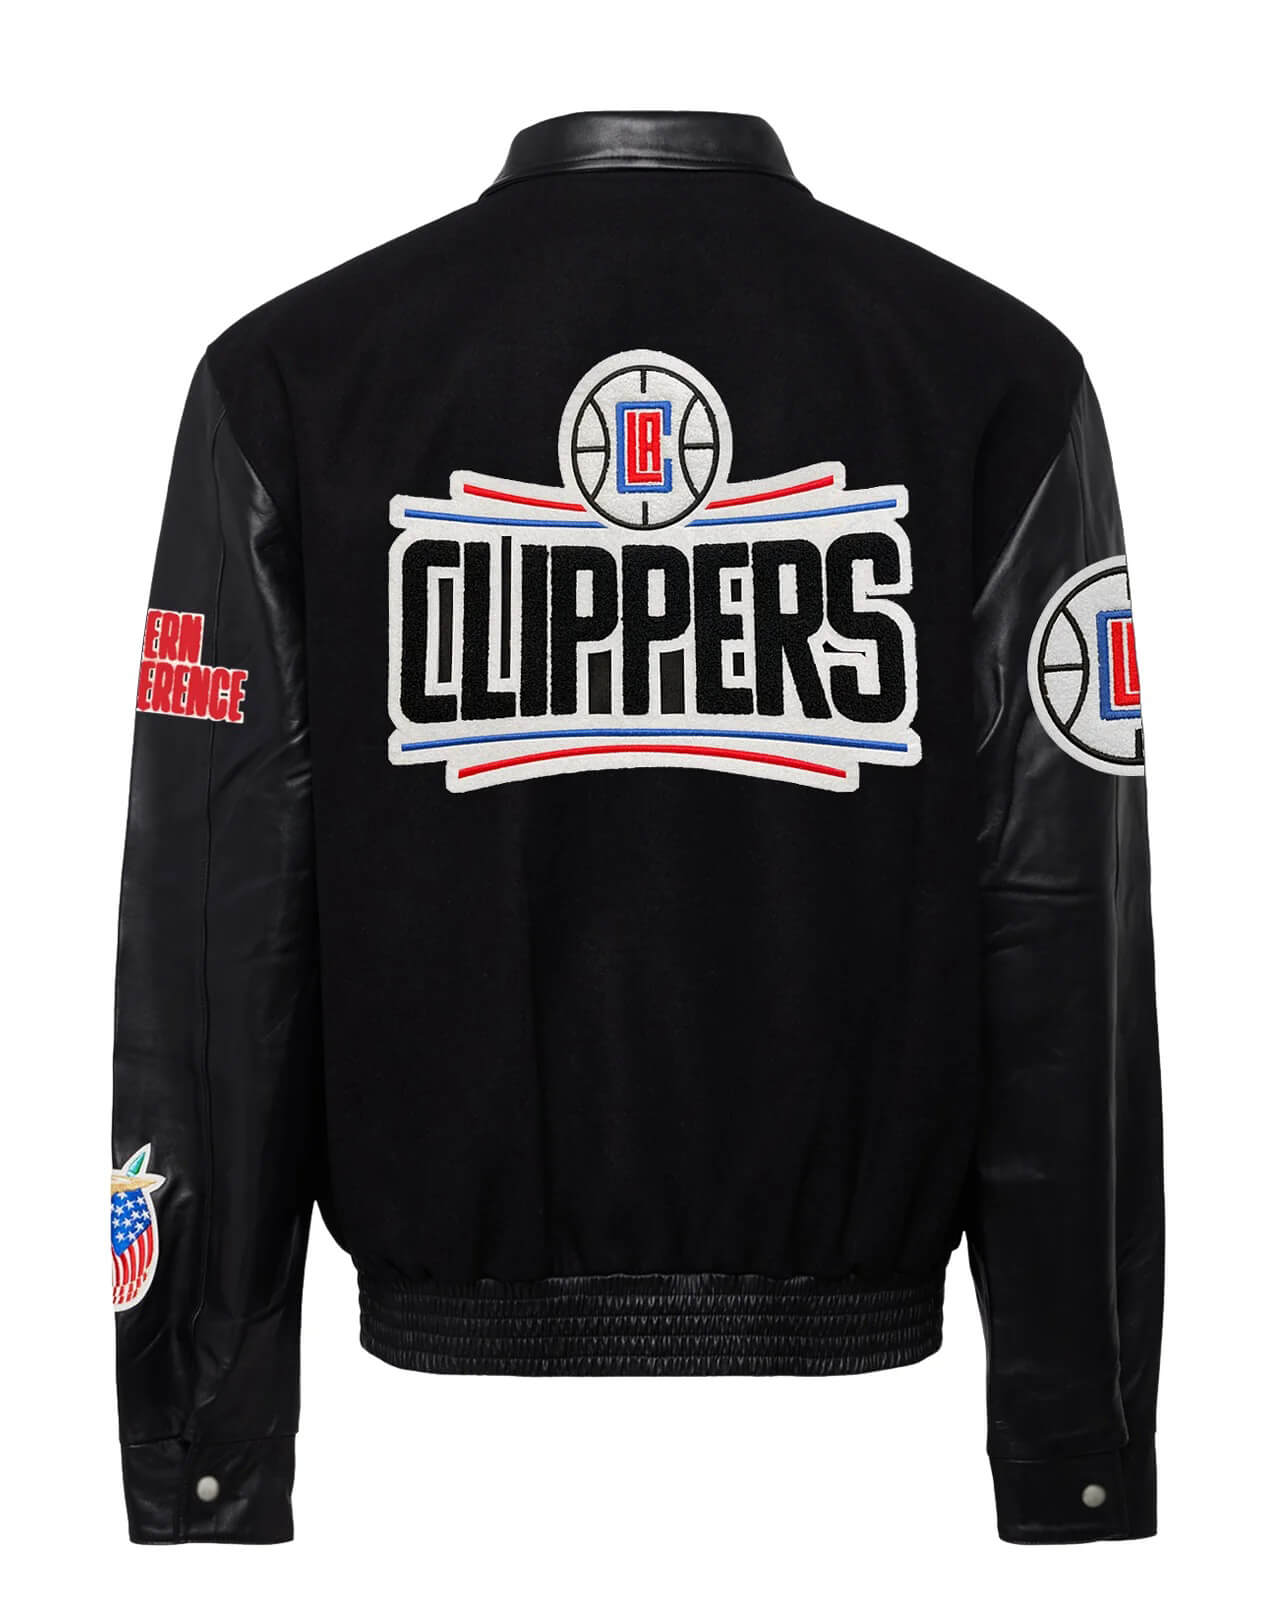 NBA LA Clippers Black Varsity Jacket - Maker of Jacket